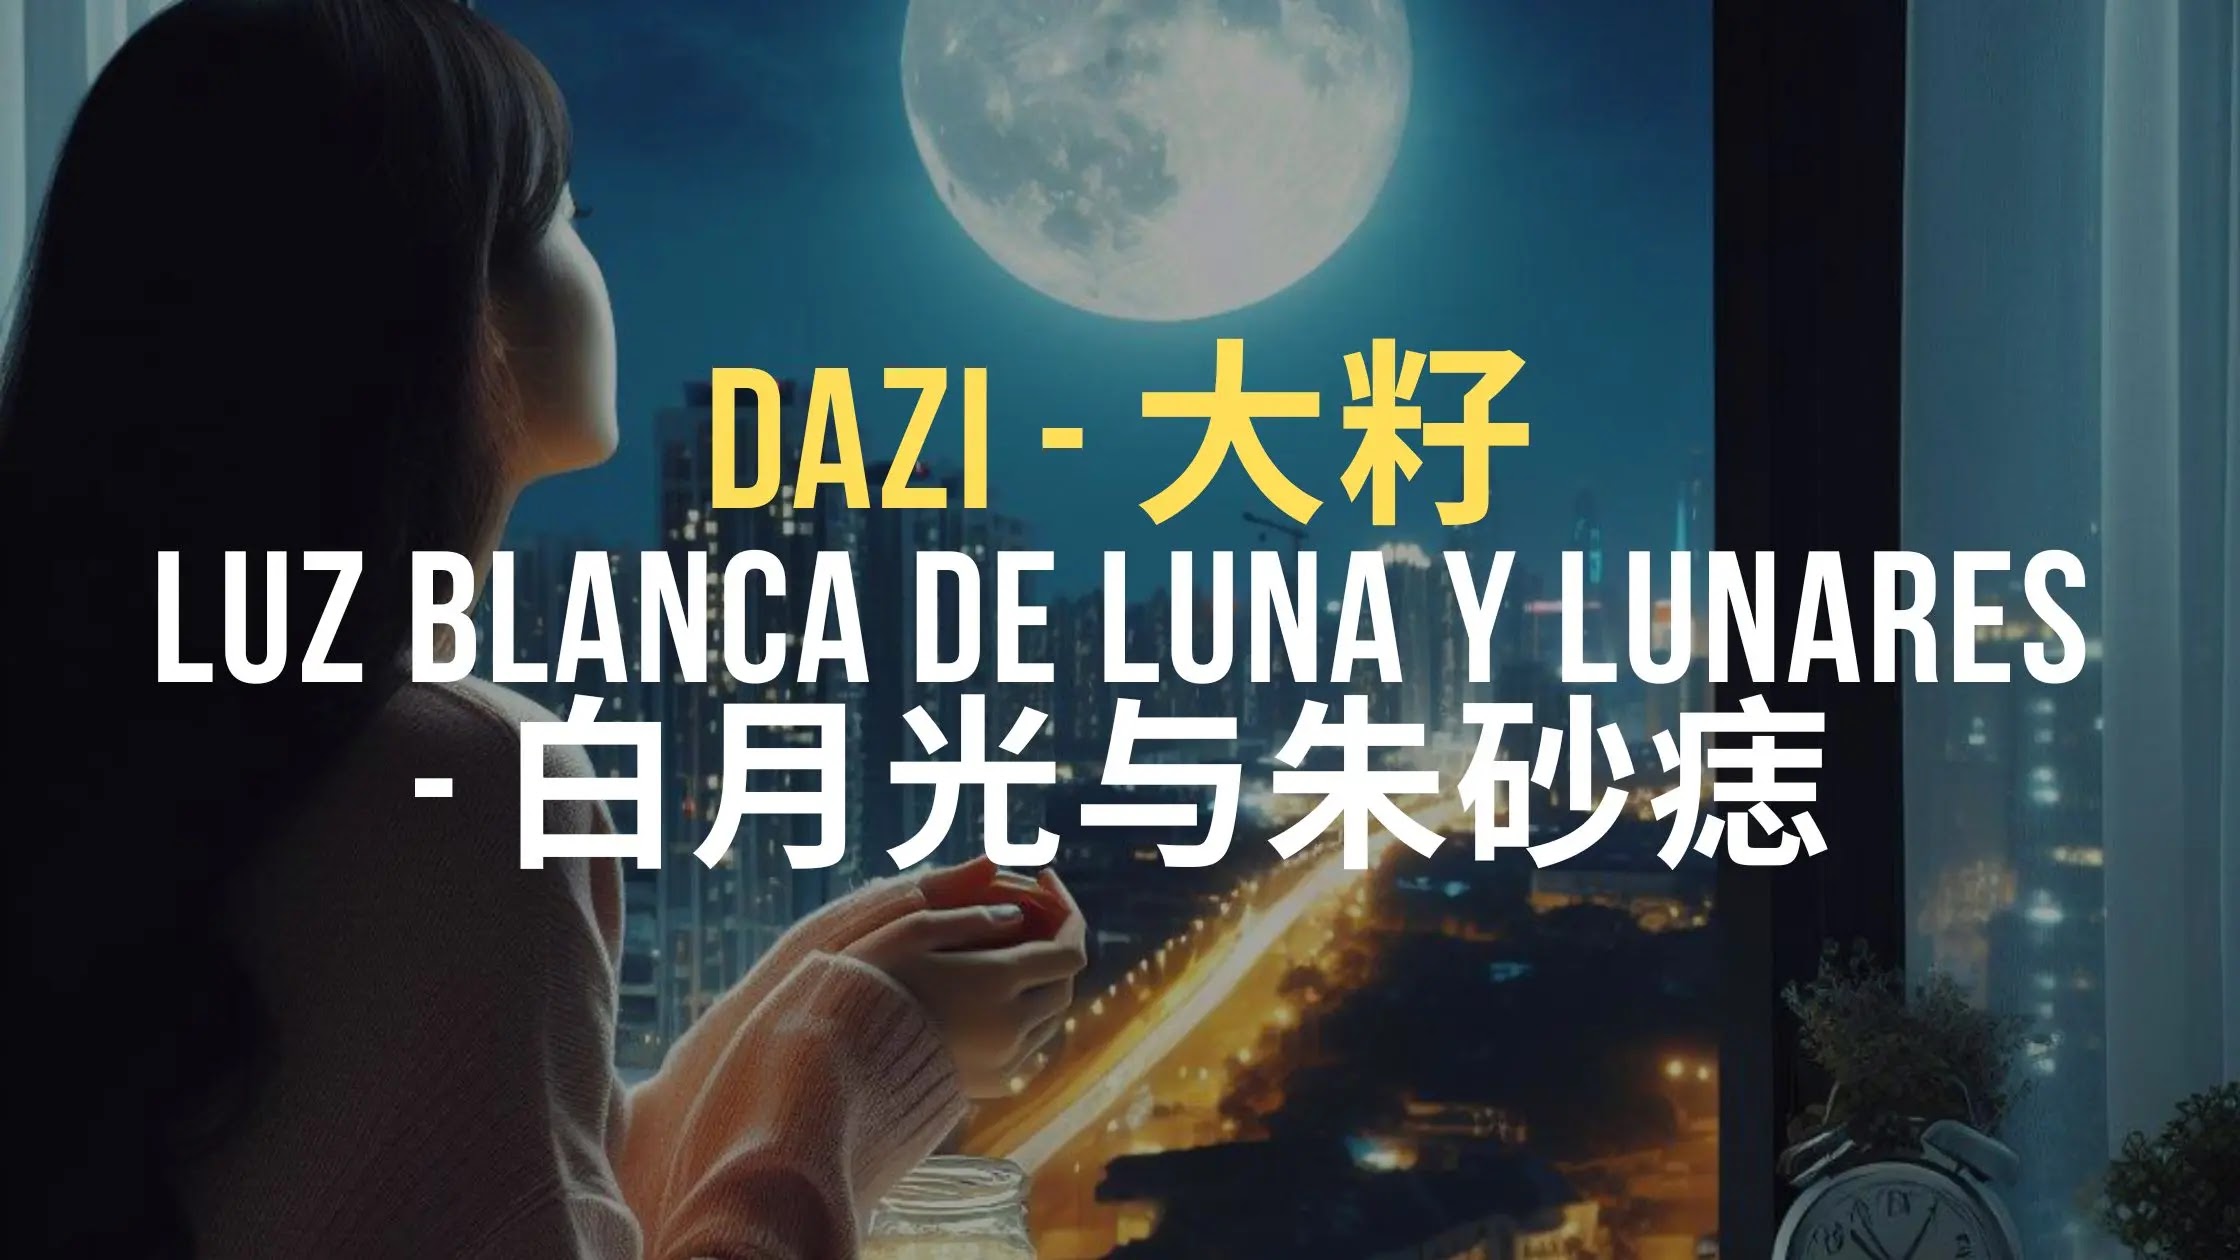 Aprende chino cantando: Dazi 大籽 - Luz de luna blanca y lunares 白月光与朱砂痣 [ES/CH/Pinyin]